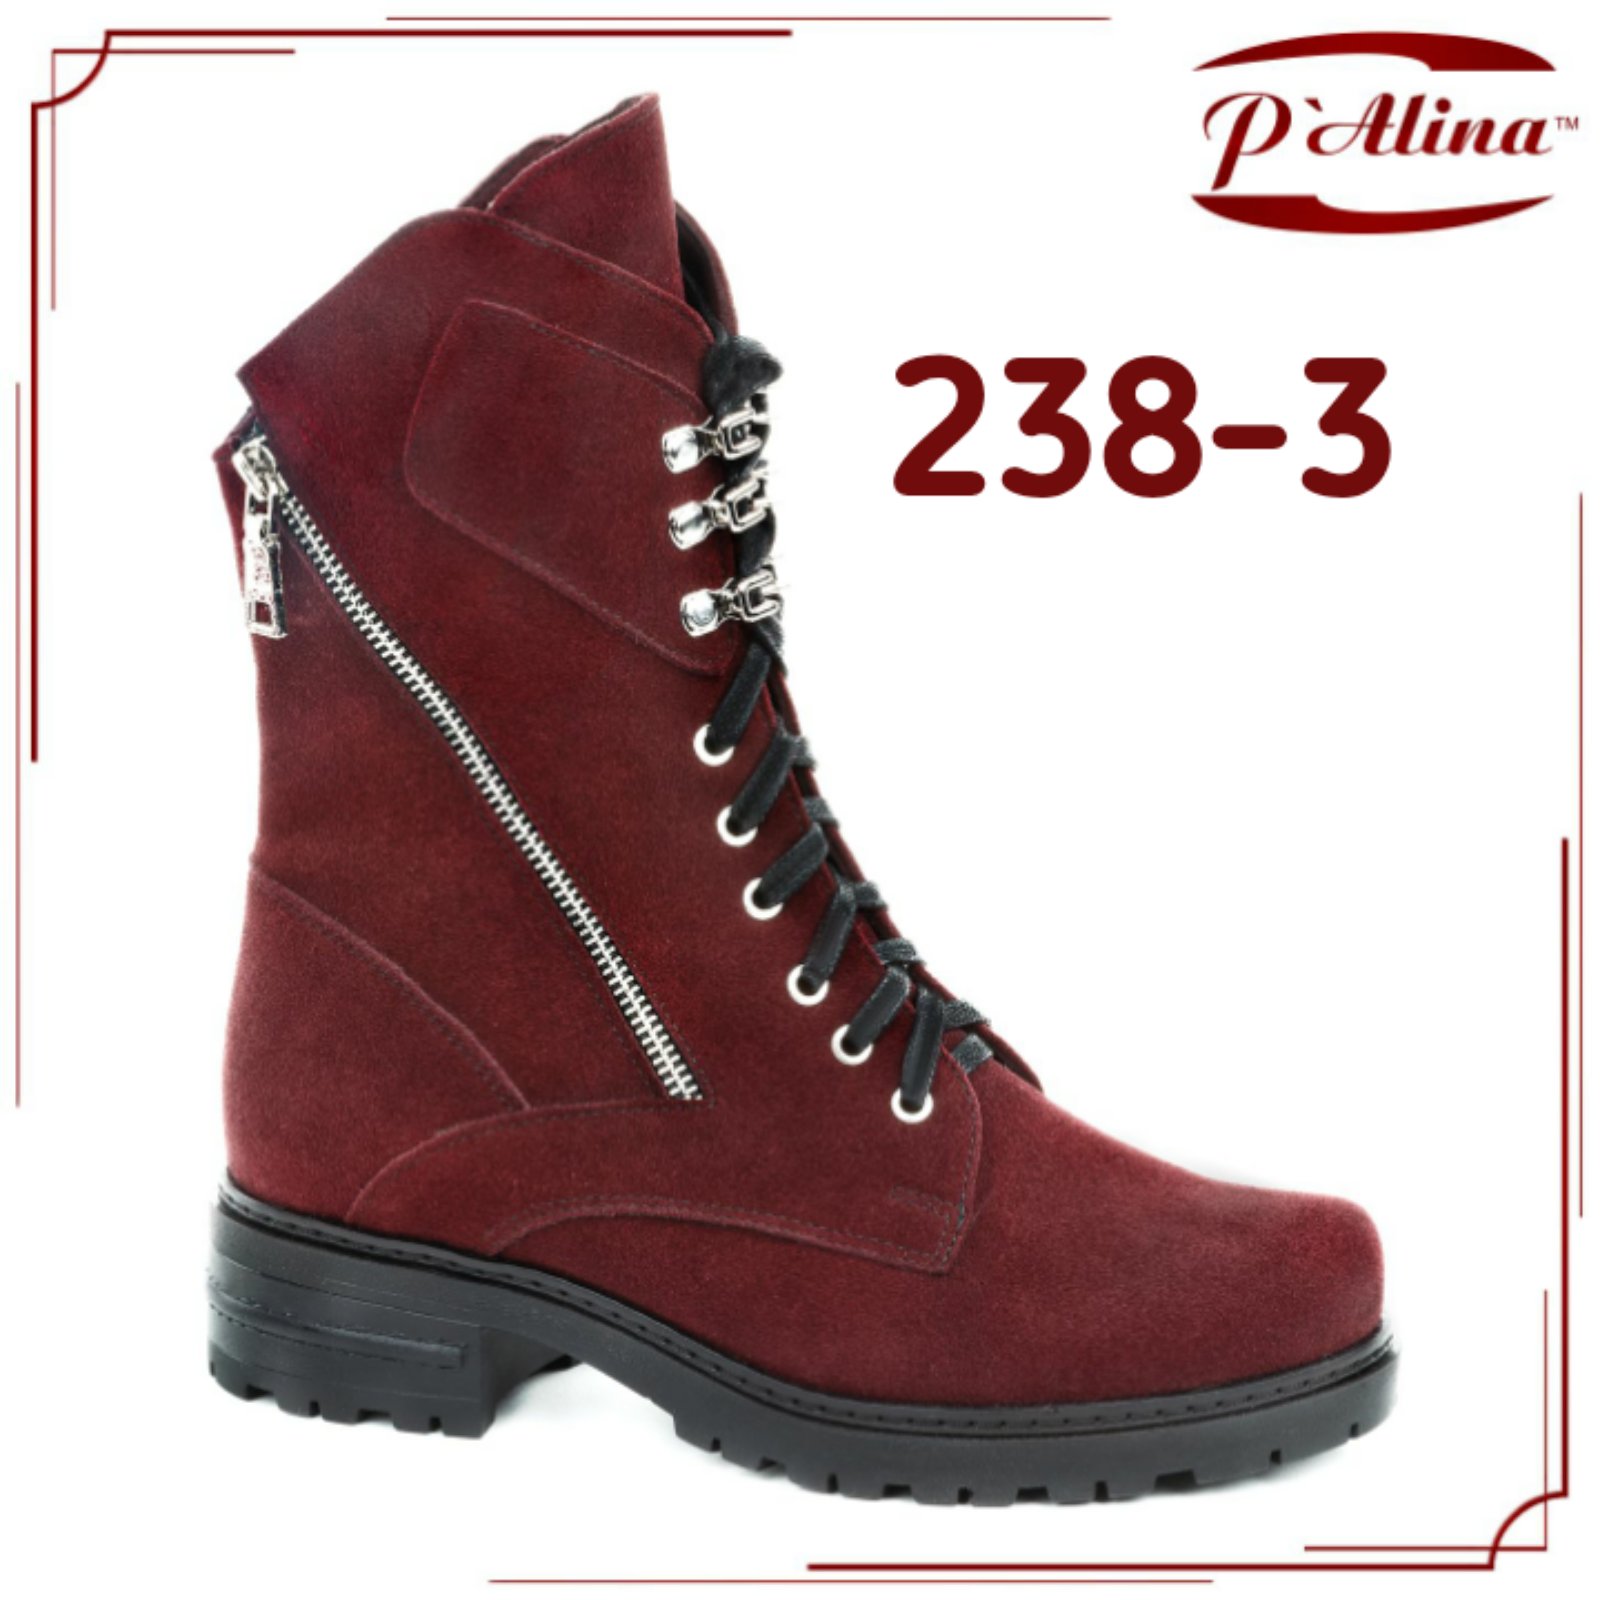 Осень-Зима 2020/21 от TM Palina, новая коллекция обуви с приятными бонусами